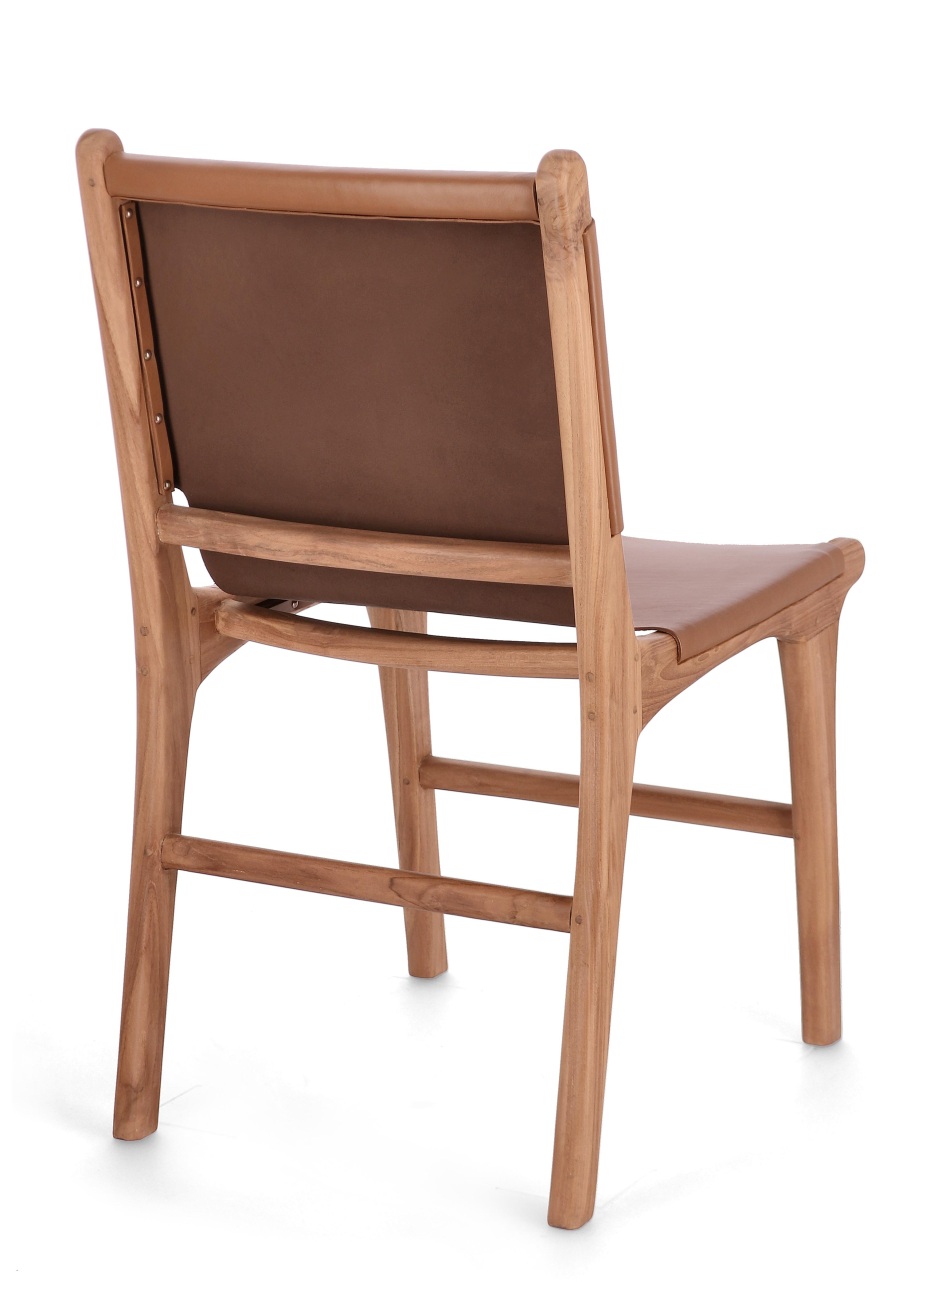 Der Esszimmerstuhl Eugenie überzeugt mit seinem modernen Stil. Gefertigt wurde er aus Leder, welches einen Cognac Farbton besitzt. Das Gestell ist aus Teakholz und hat eine natürliche Farbe. Der Stuhl besitzt eine Sitzhöhe von 45 cm.